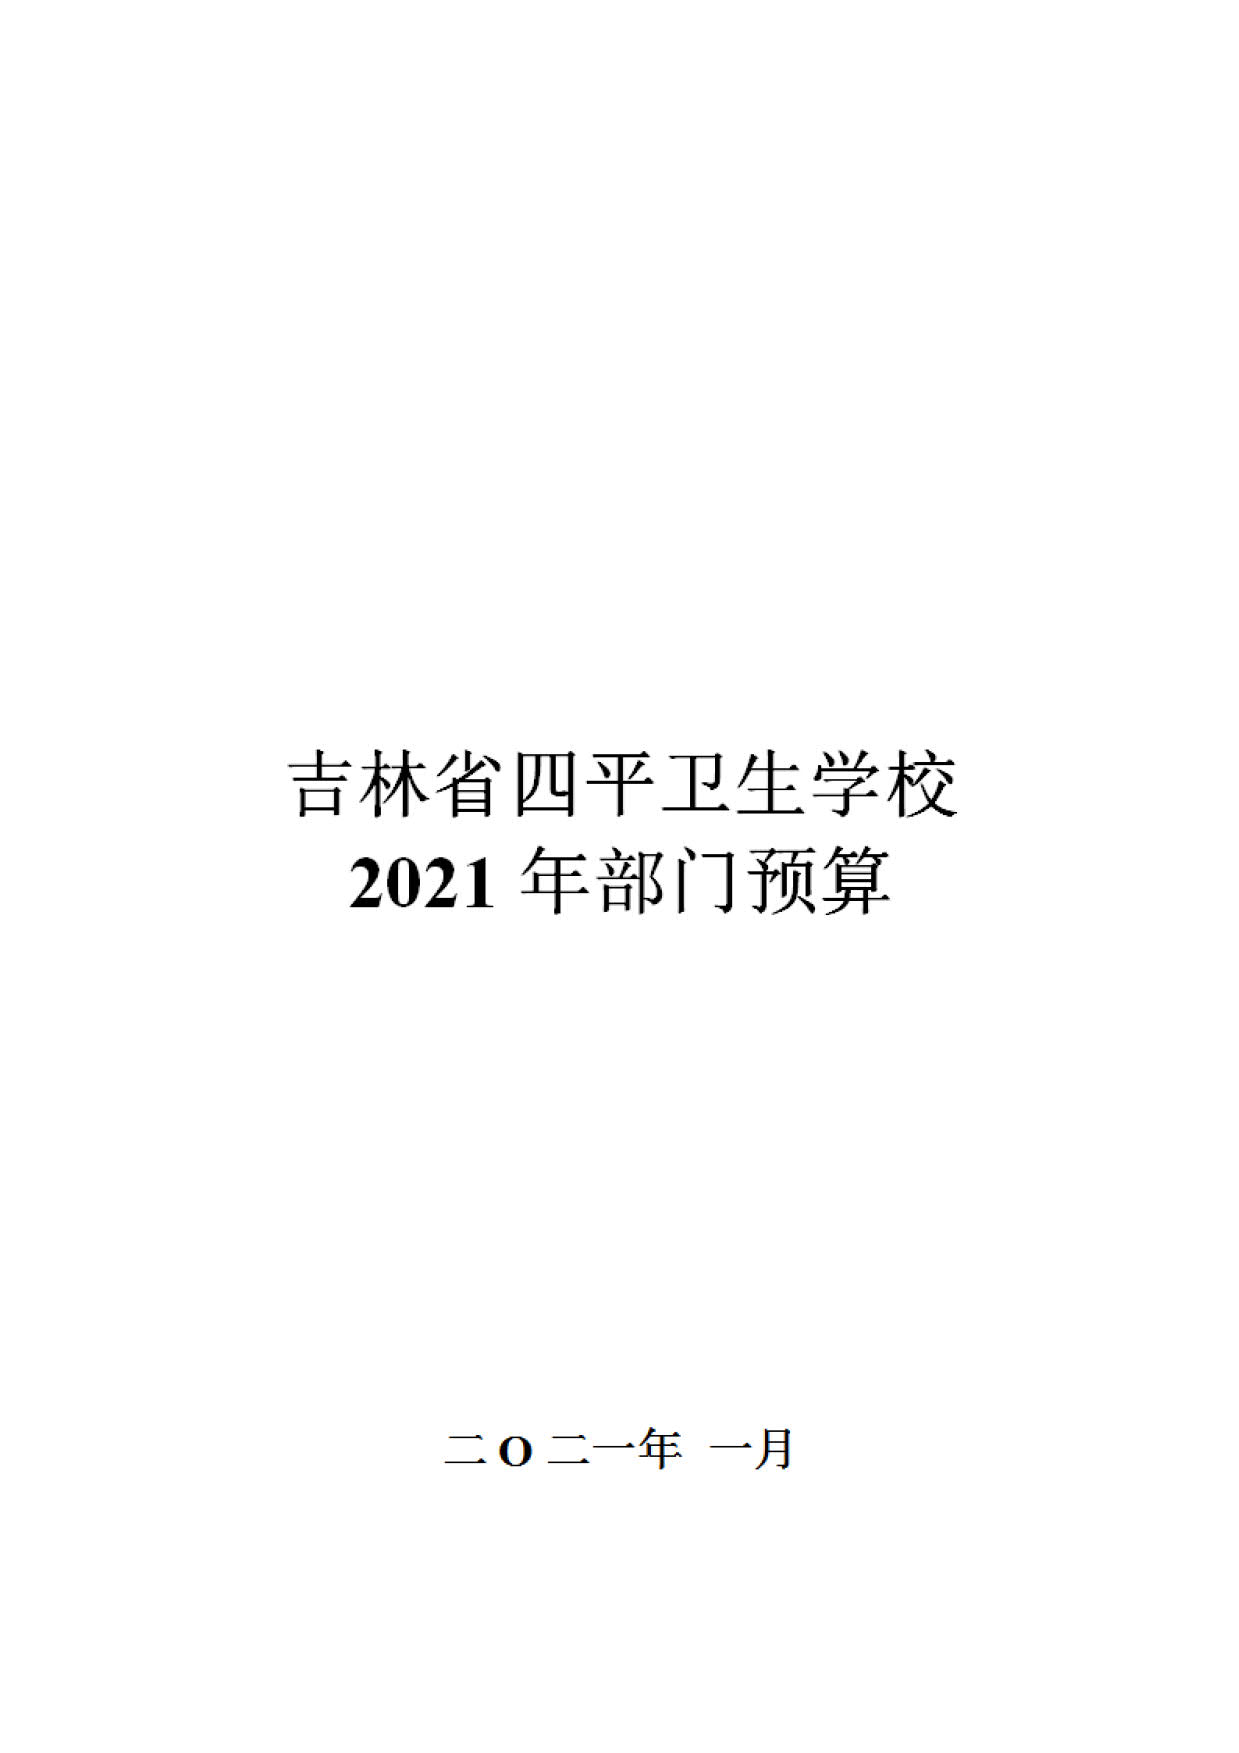 2021-W020210127497859704515_01.jpg